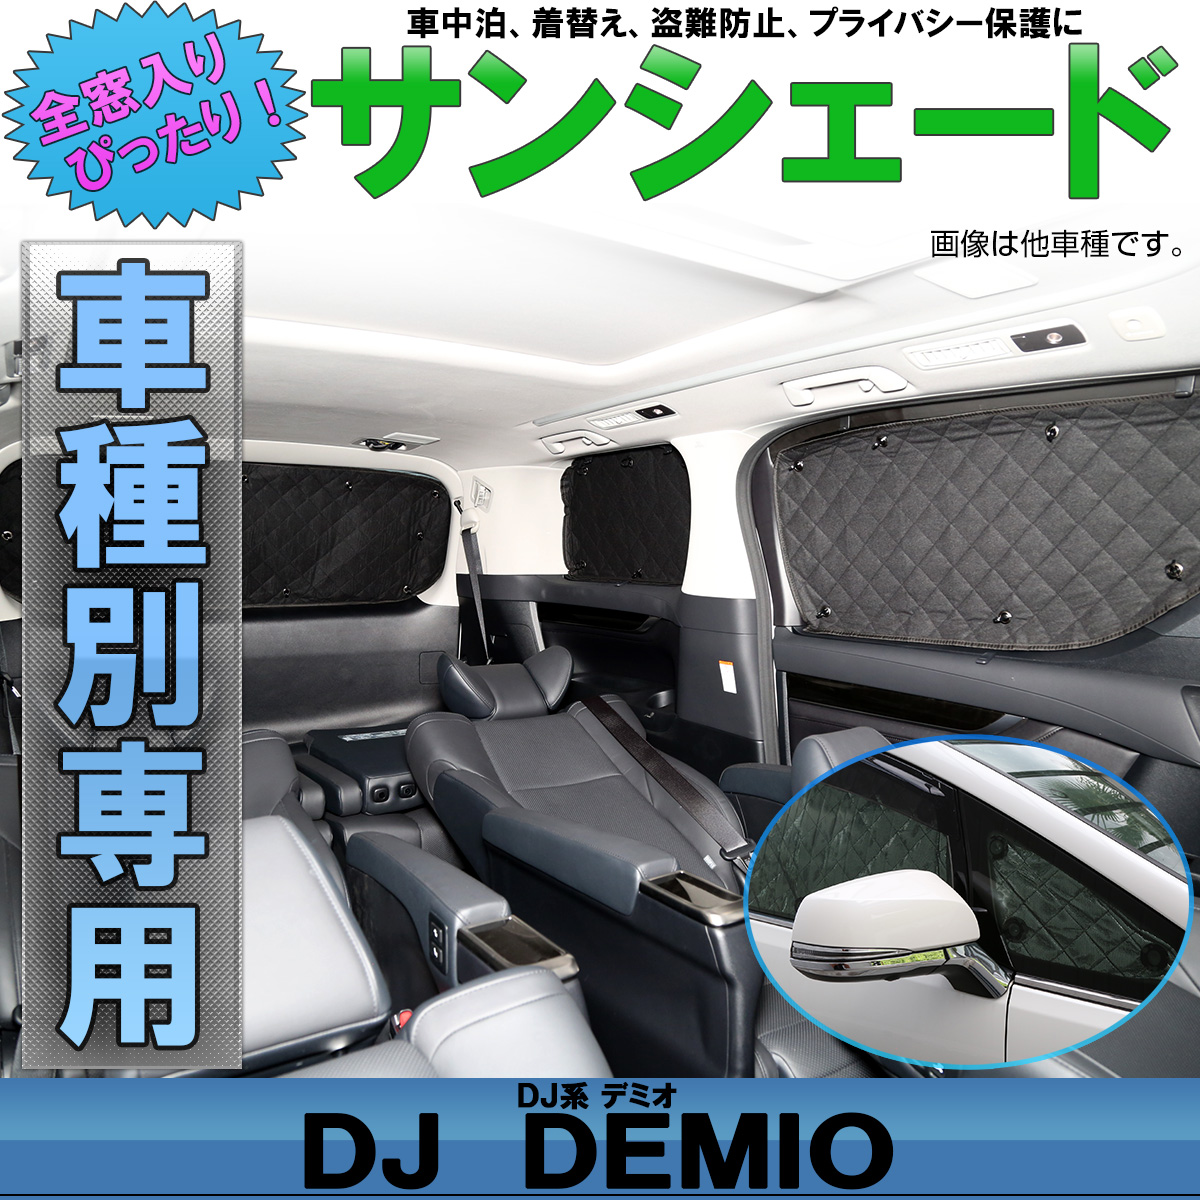 サンシェード Dj系 デミオ Dj3 Dj5 Demio 専用設計 全窓用セット 5層構造 ブラックメッシュ 車中泊 プライバシー保護に S 8